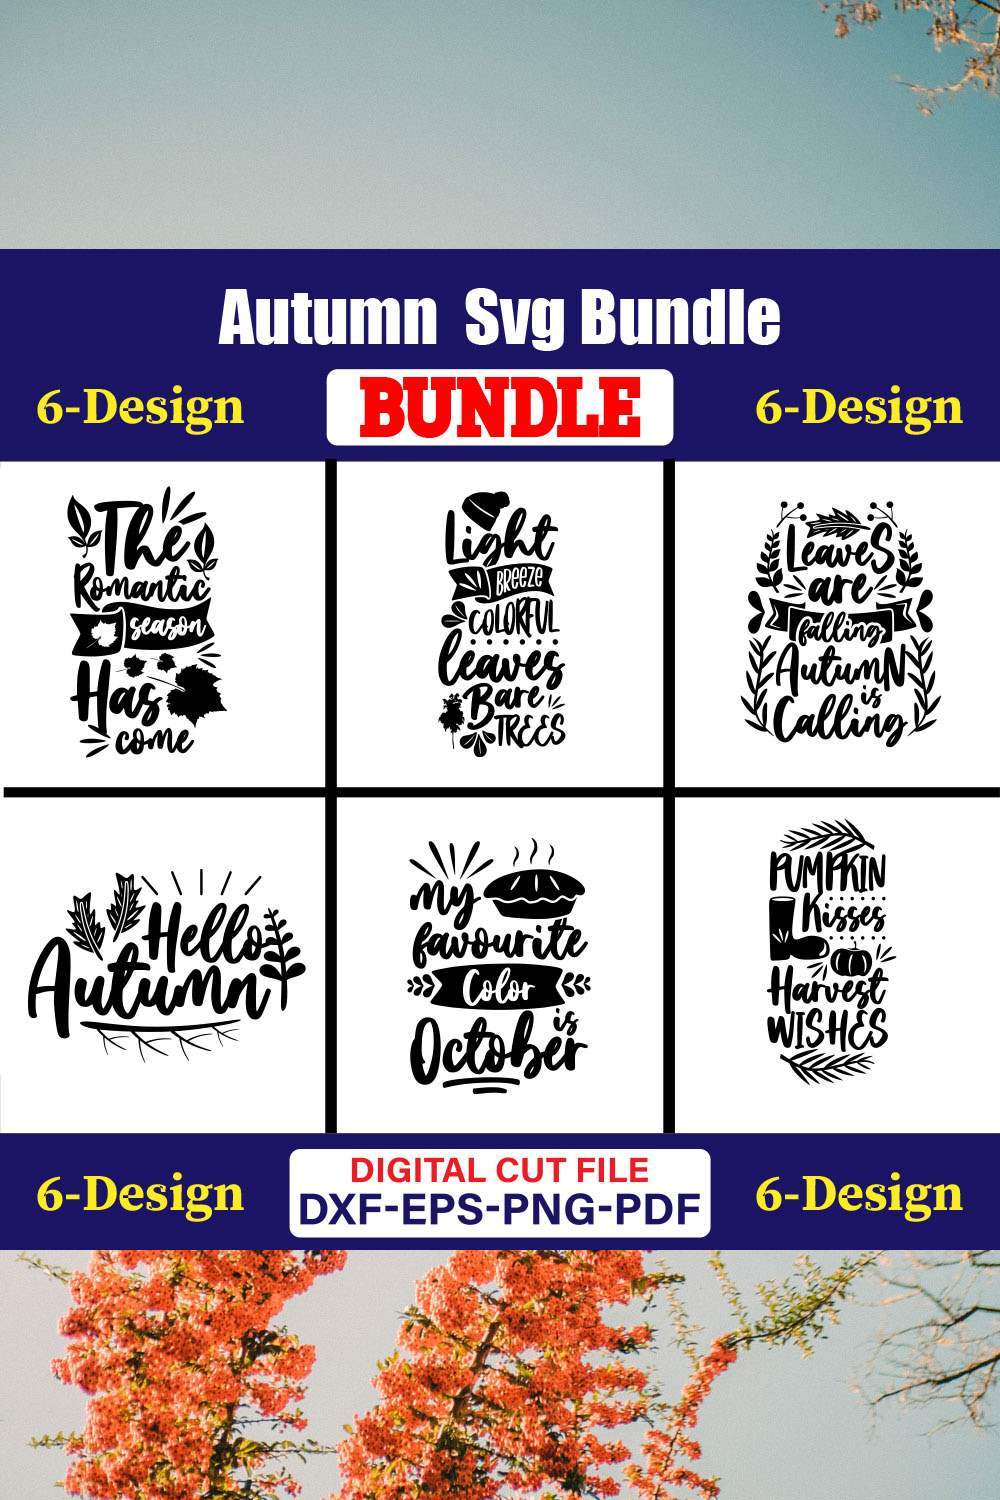 Autumn SVG T-shirt Design Bundle Vol-04 pinterest preview image.